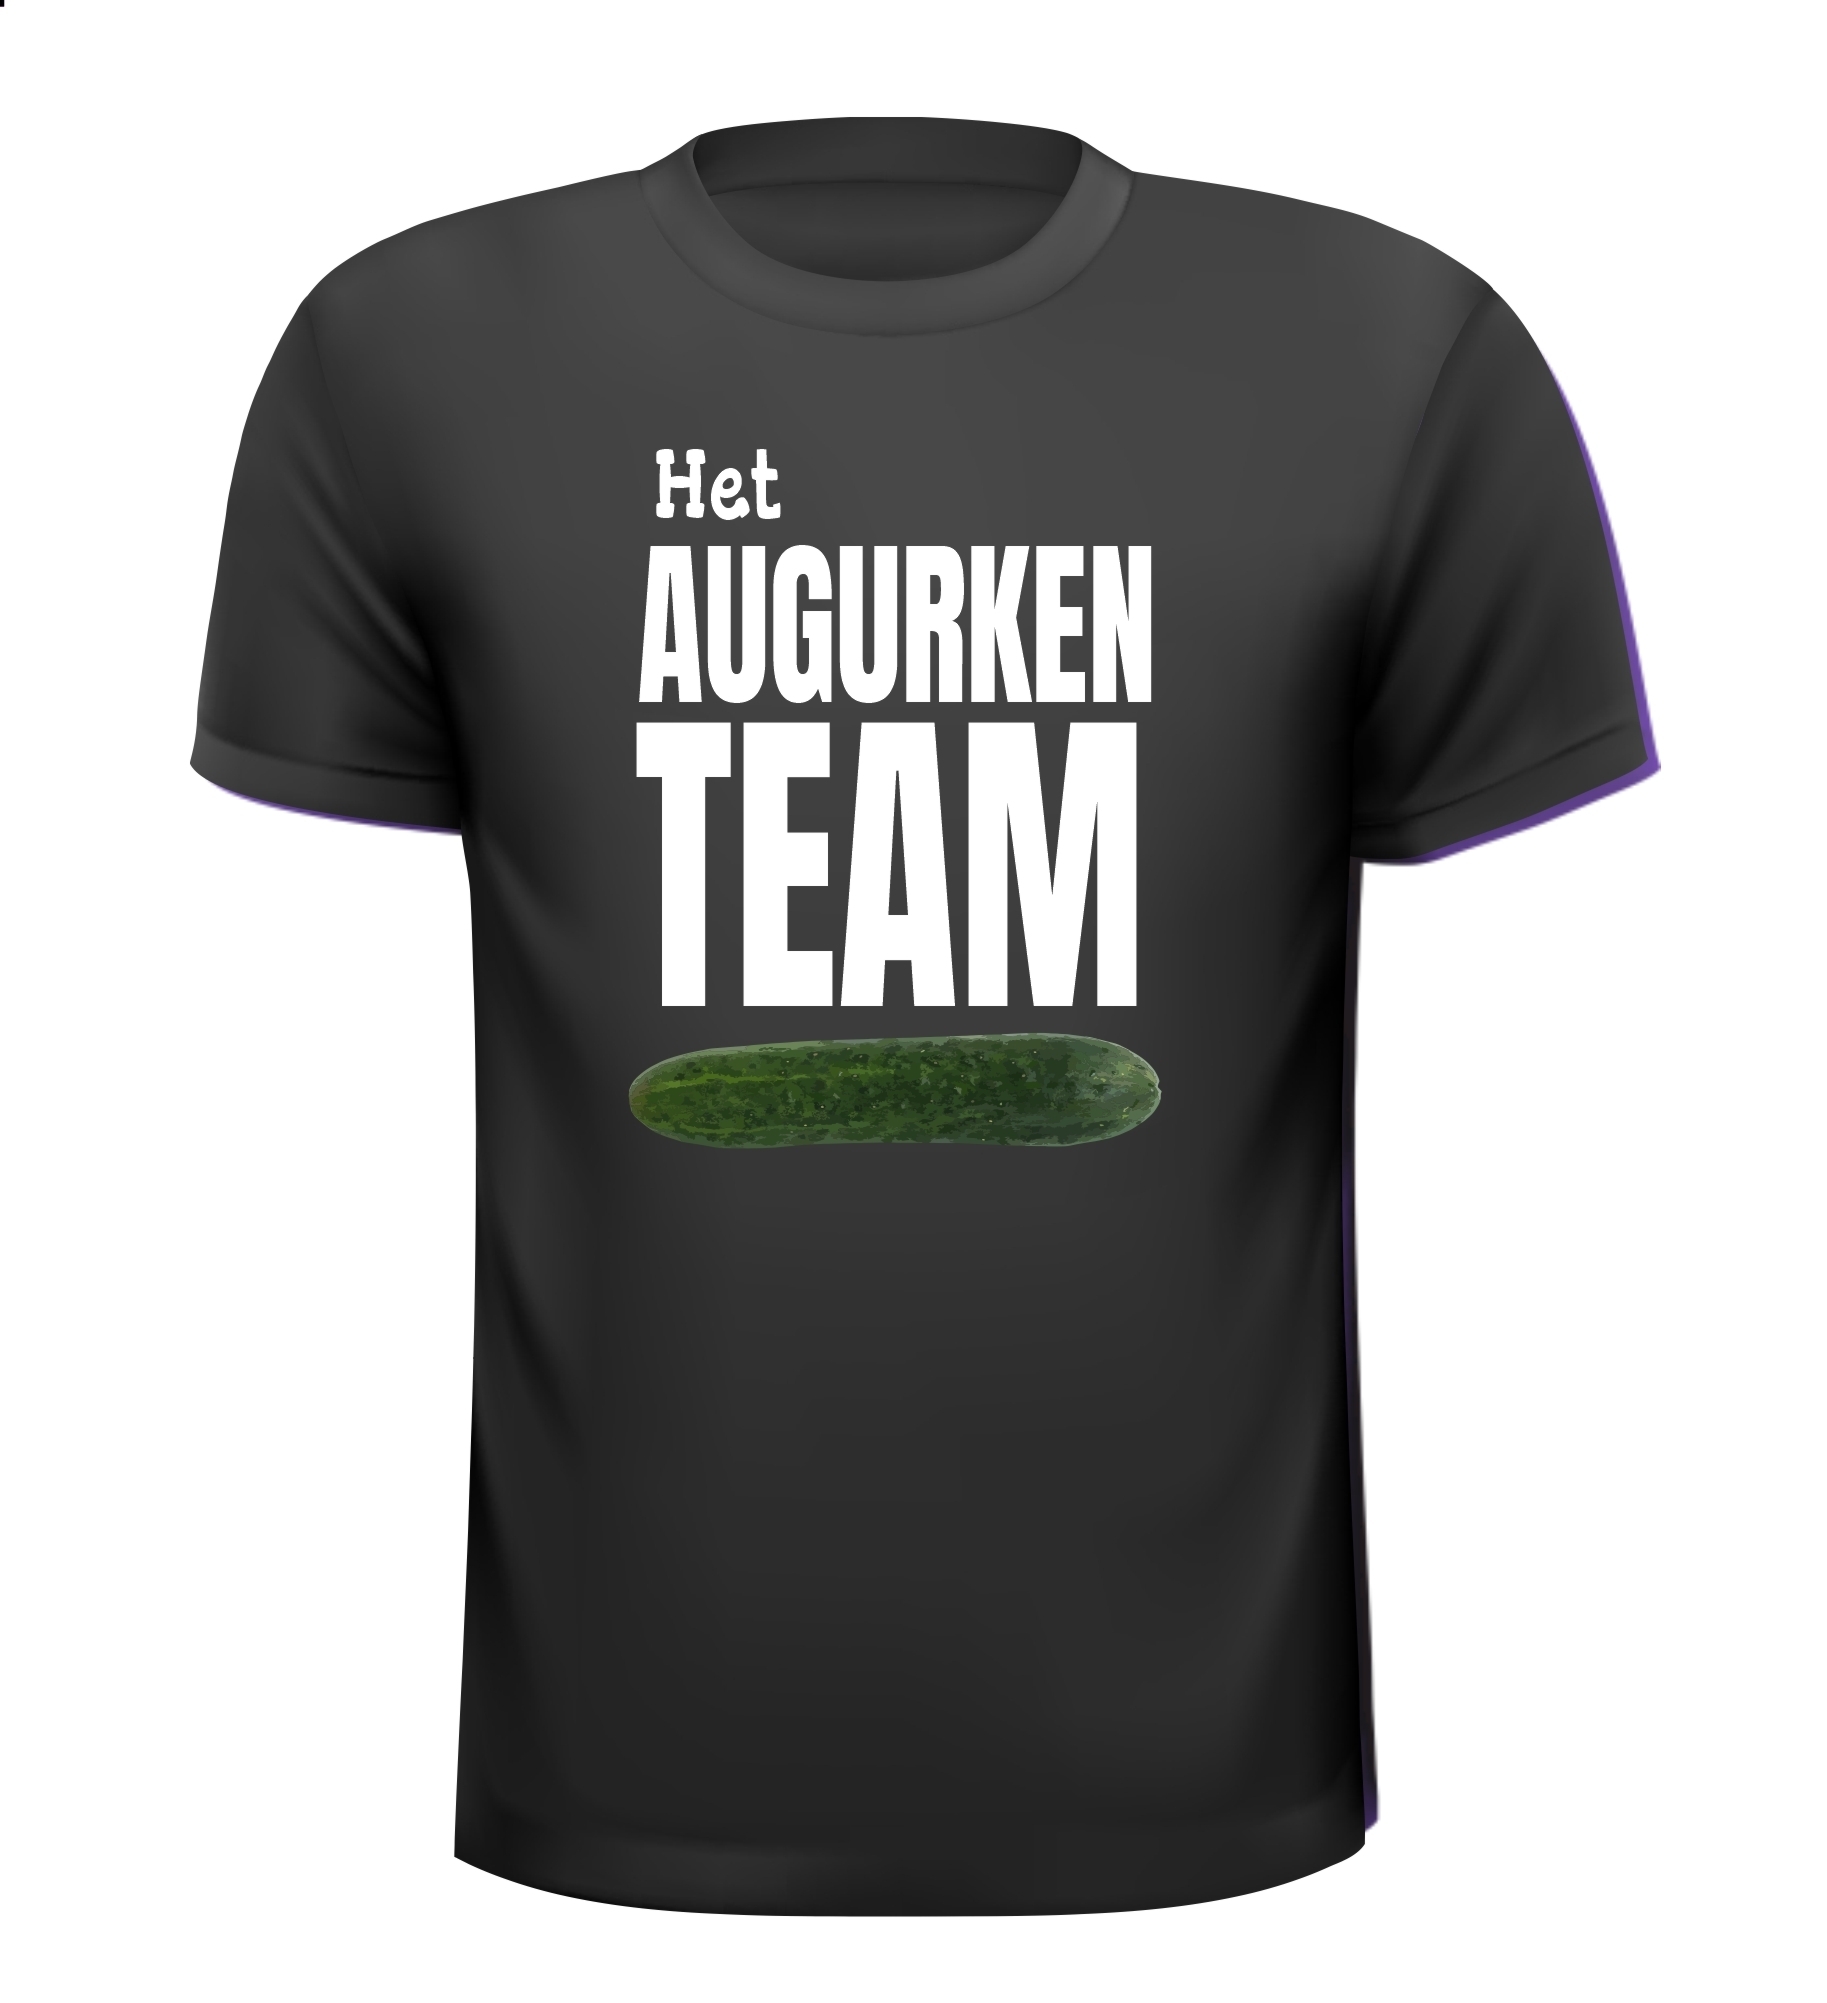 T-shirtje voor het augurken team!